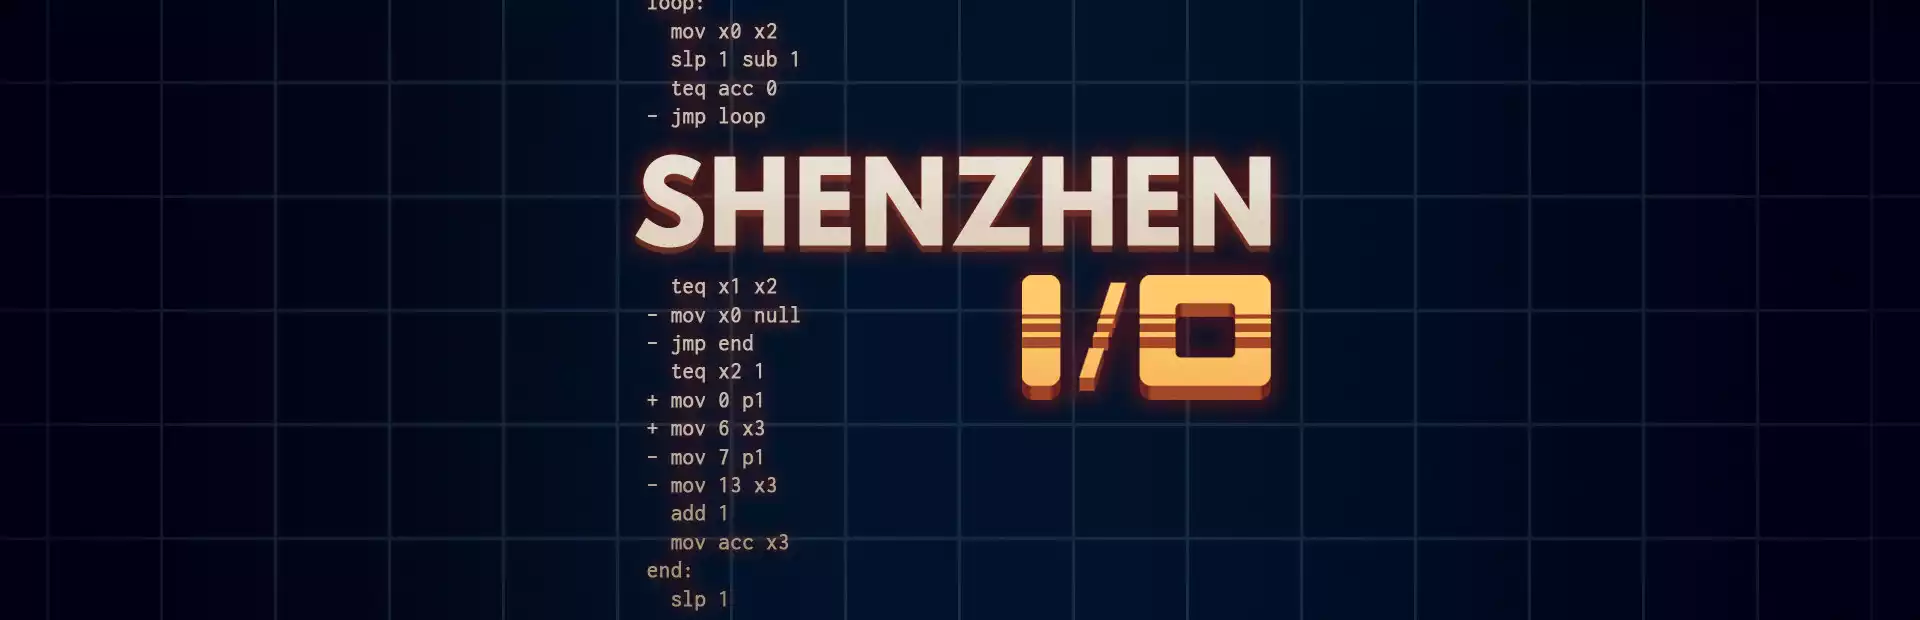 SHENZHEN I/O Steam Key China